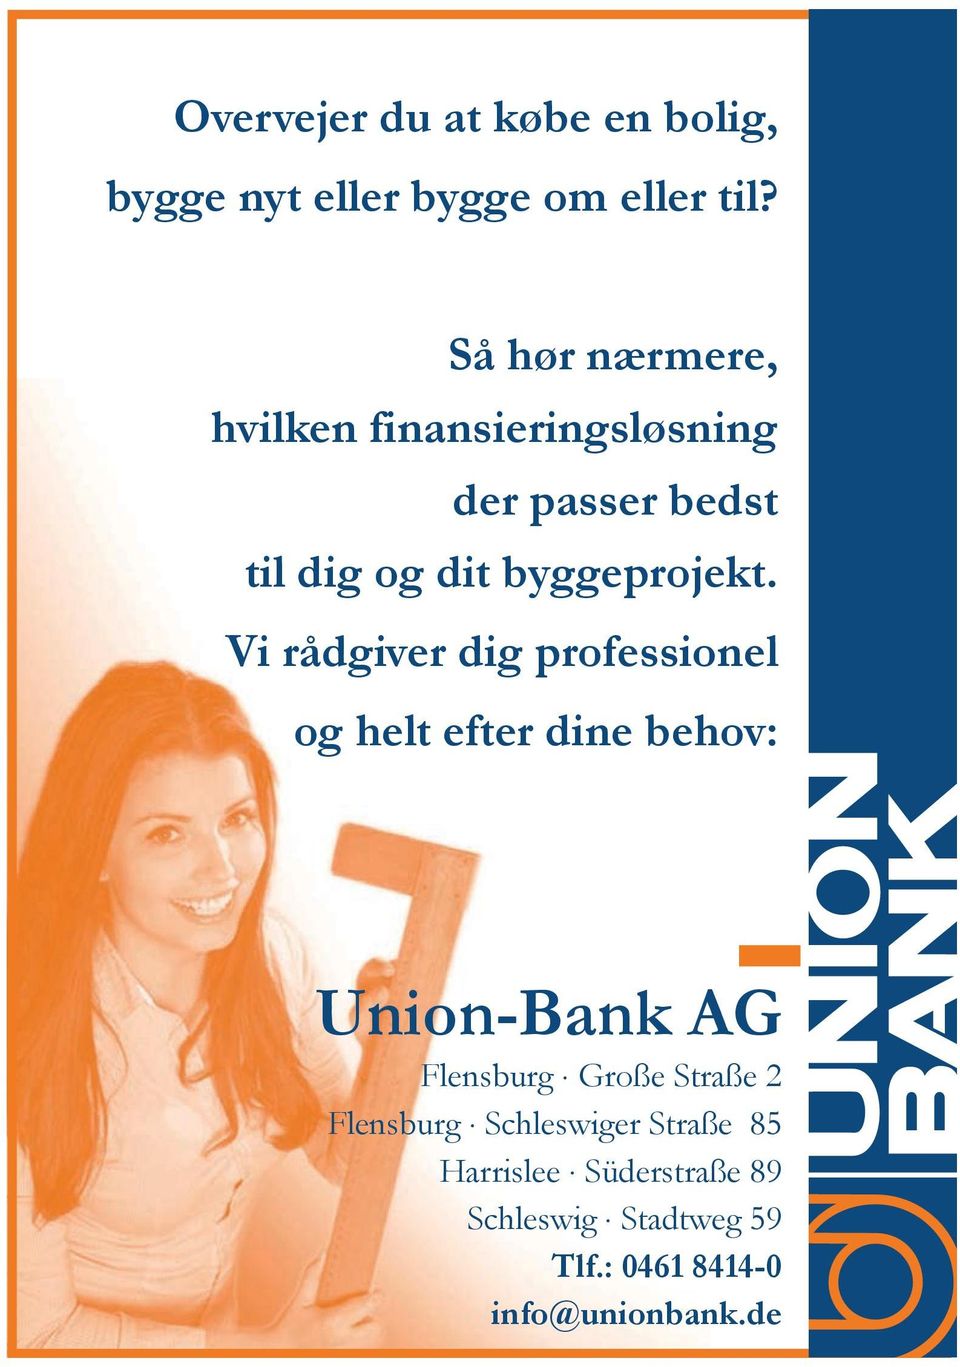 Vi rådgiver dig professionel og helt efter dine behov: Union-Bank AG Flensburg.